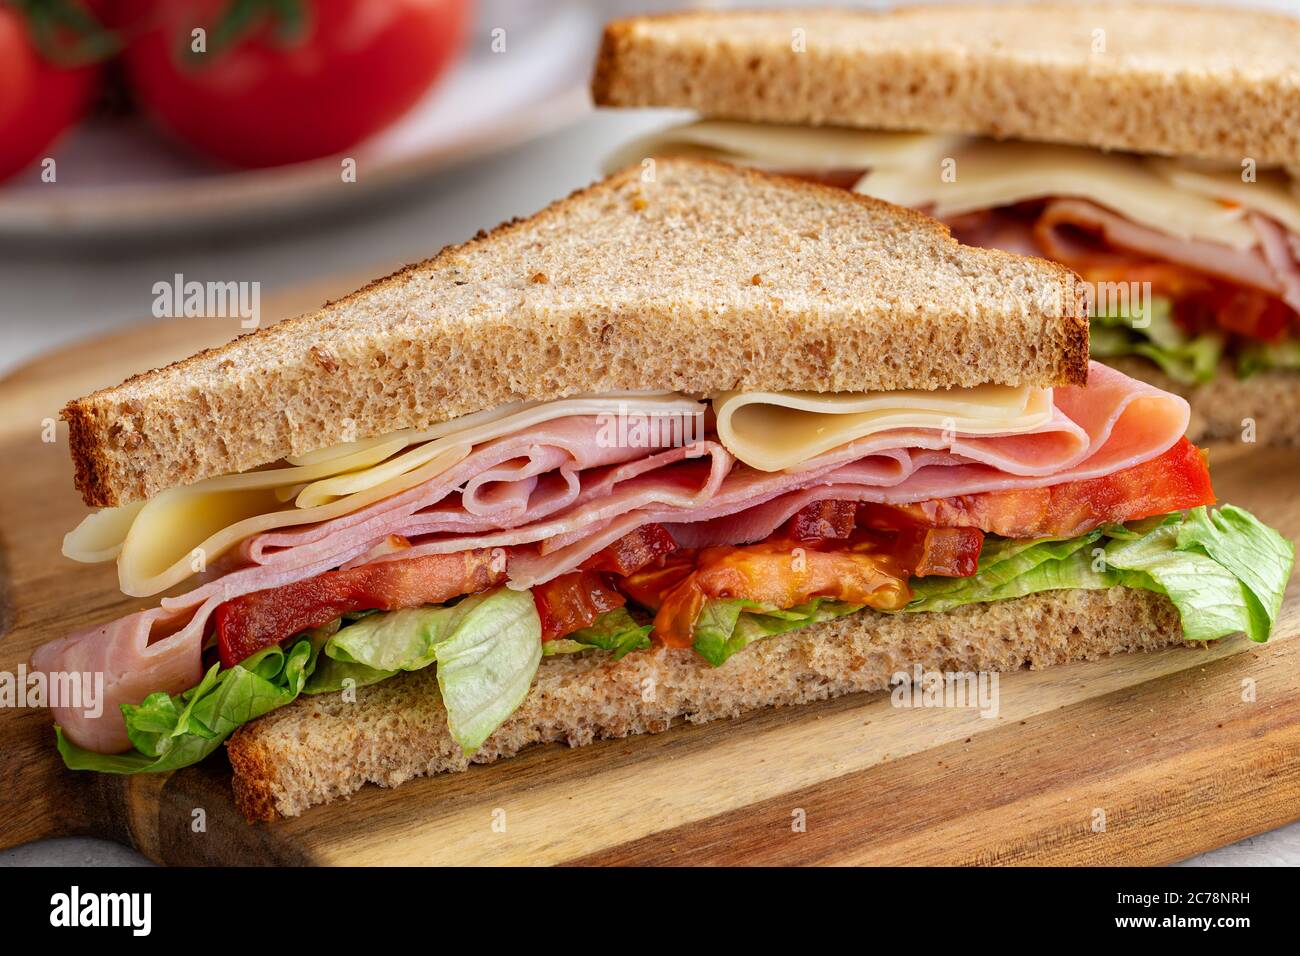 Sandwich mit Schinken, Käse, Salat und Tomaten auf Vollkornbrot, das auf einem Holzbrett halbiert ist Stockfoto